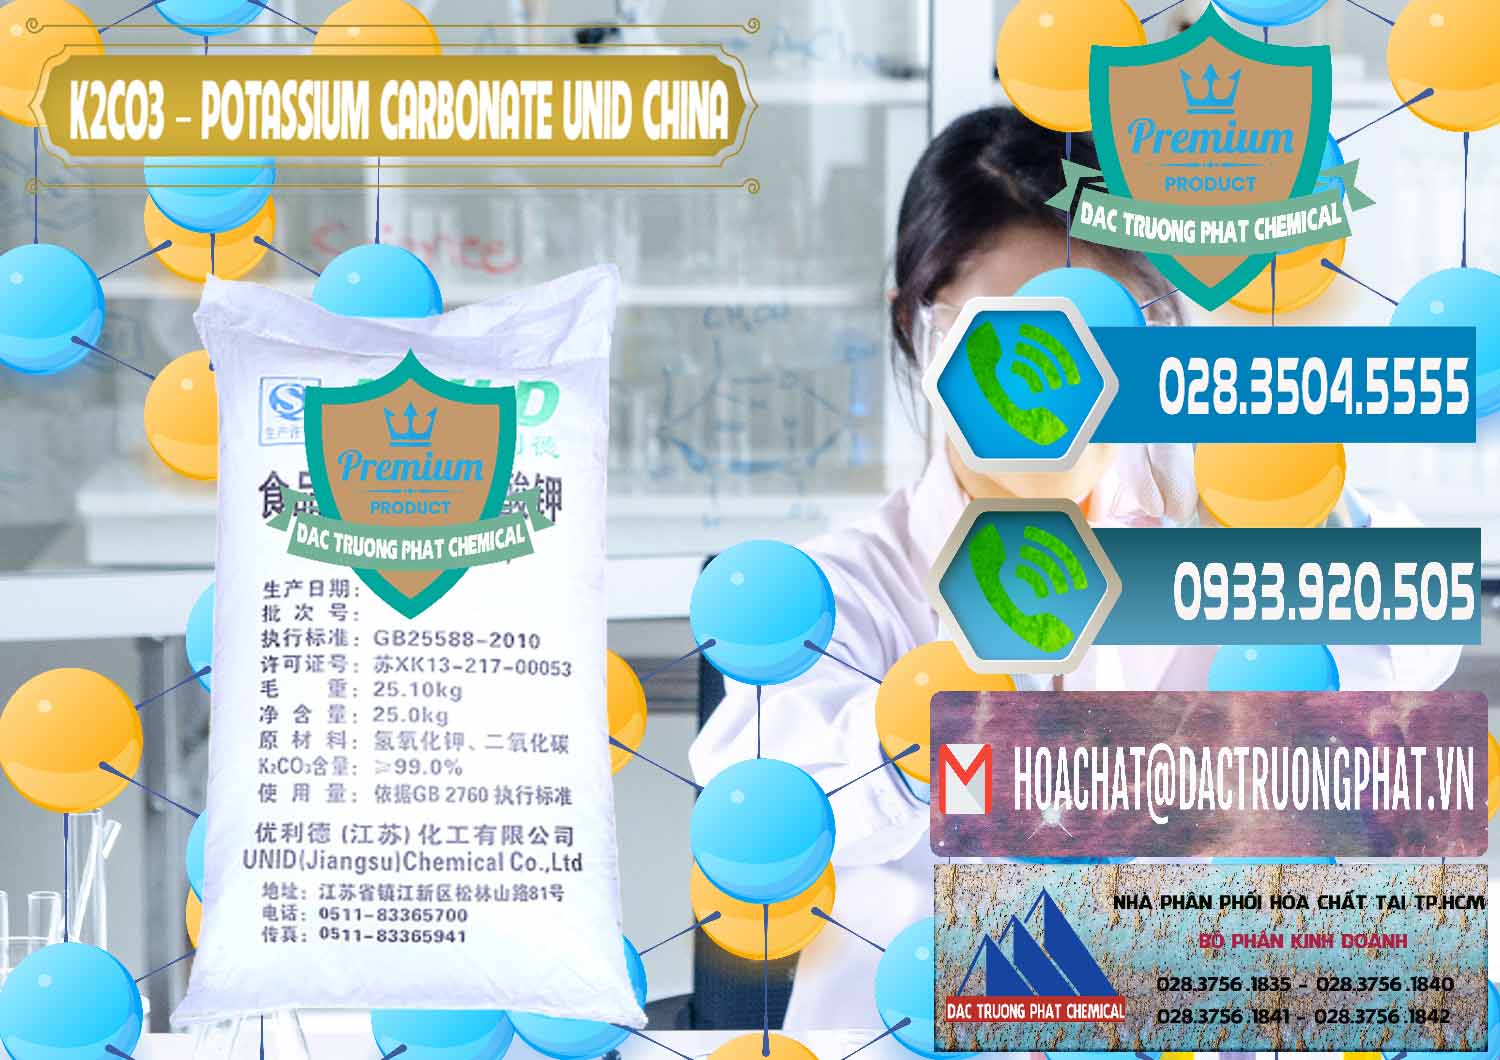 Cty bán ( cung ứng ) K2Co3 – Potassium Carbonate UNID Trung Quốc China - 0475 - Đơn vị phân phối ( bán ) hóa chất tại TP.HCM - congtyhoachat.net